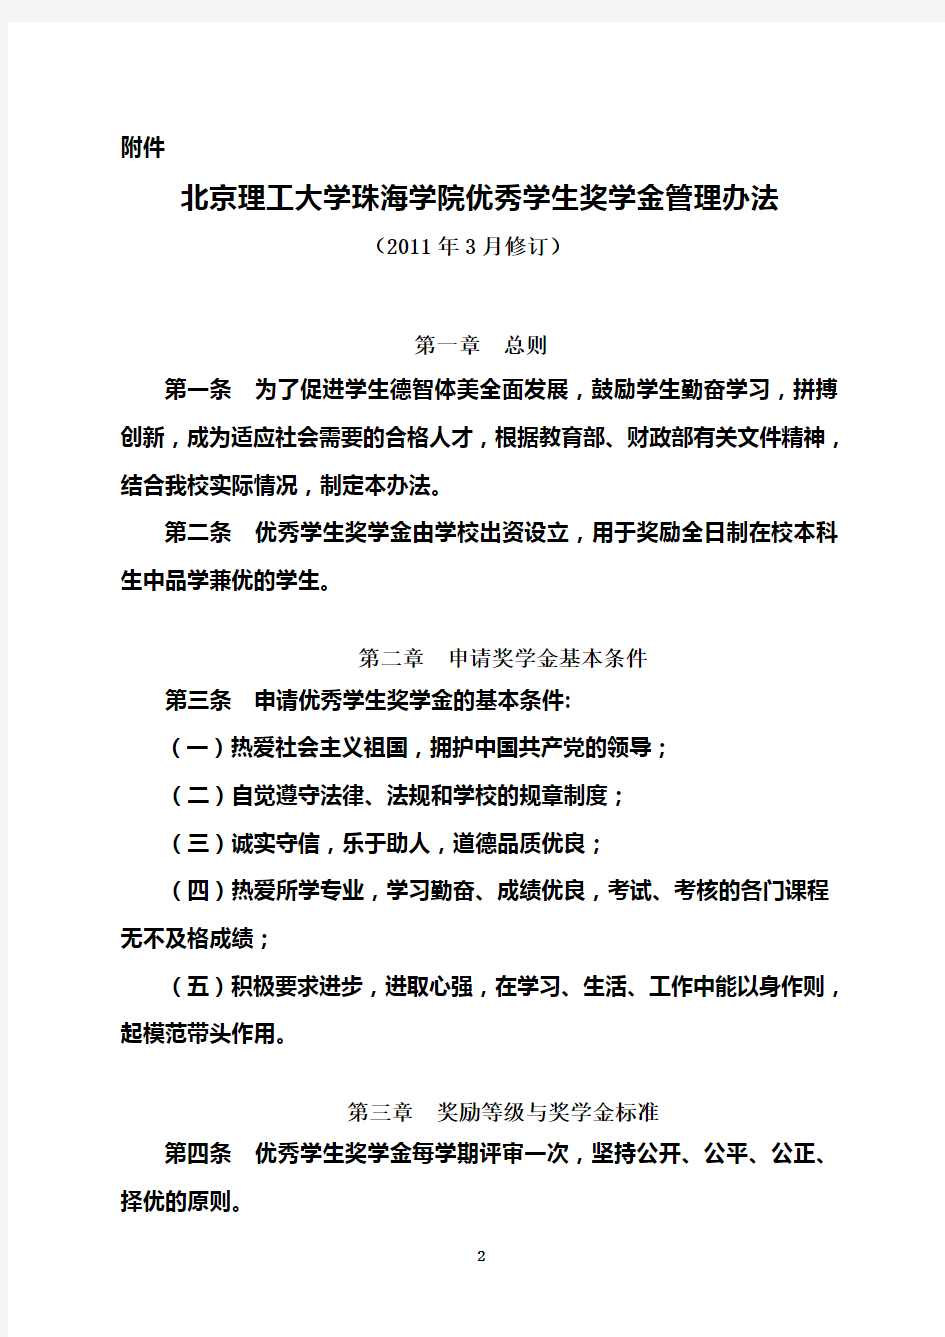 北京理工大学珠海学院优秀学生奖学金管理办法(1)